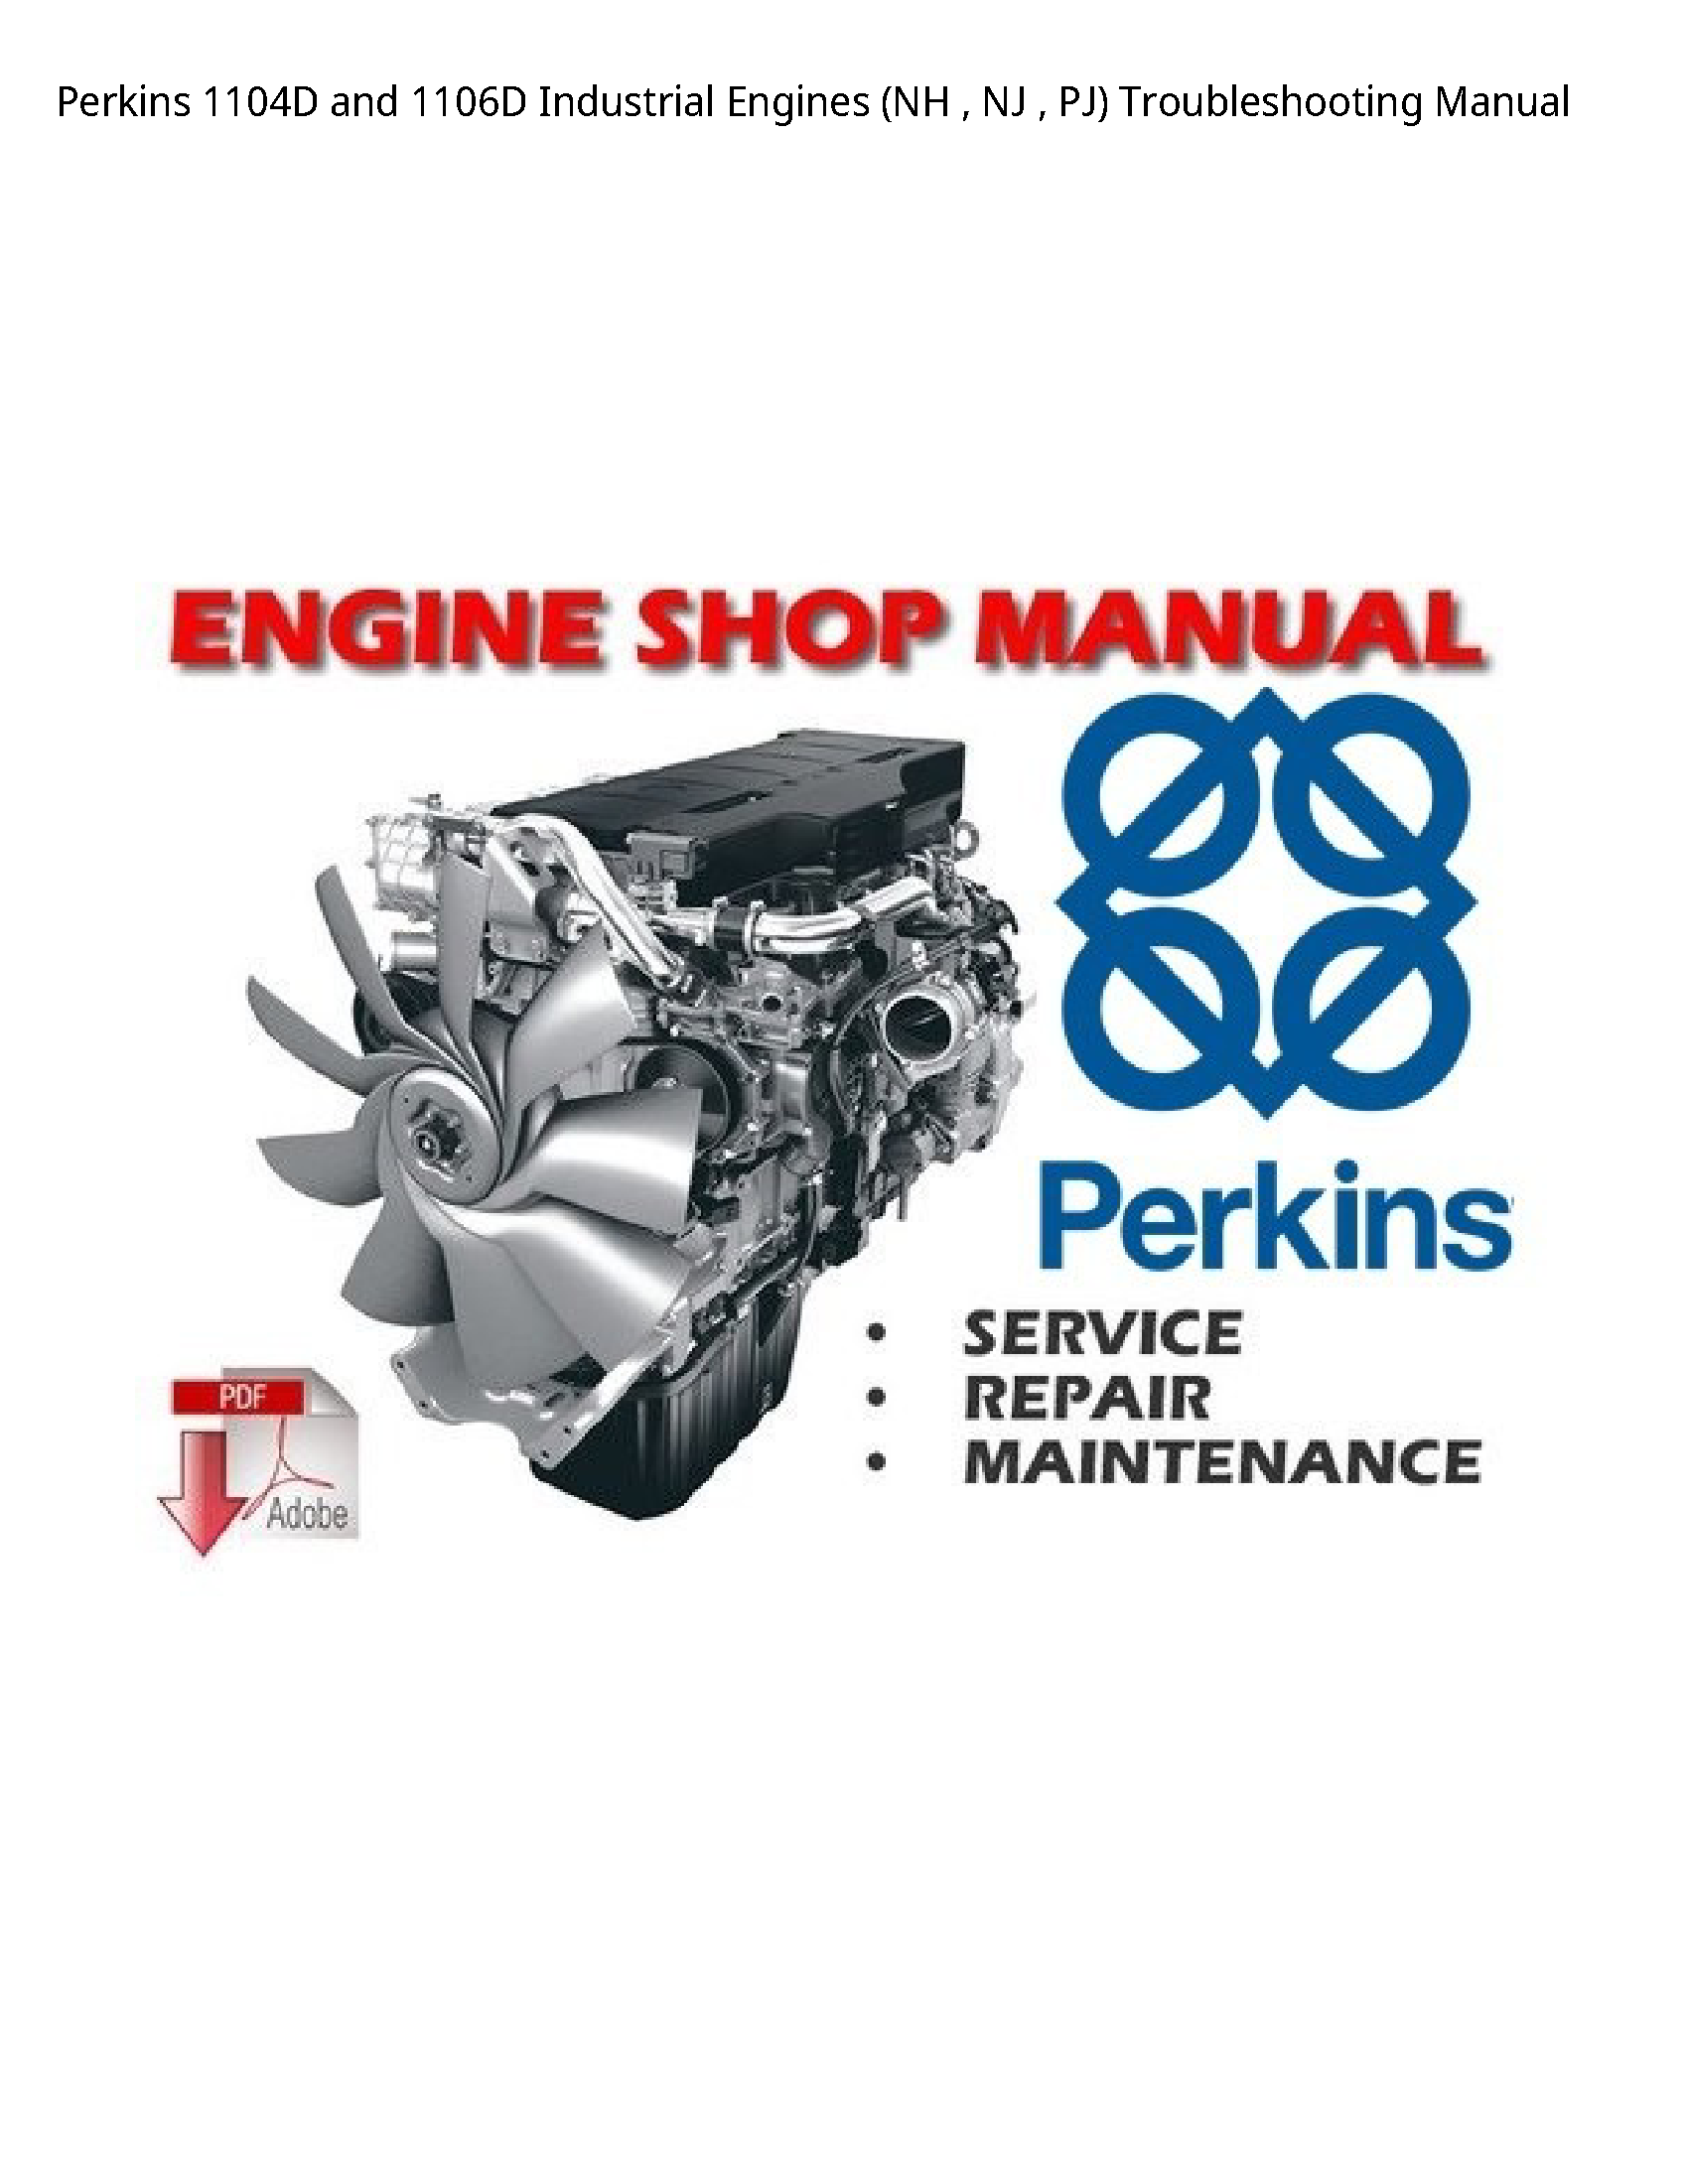 Perkins 1104D  Industrial Engines (NH NJ PJ) Troubleshooting manual